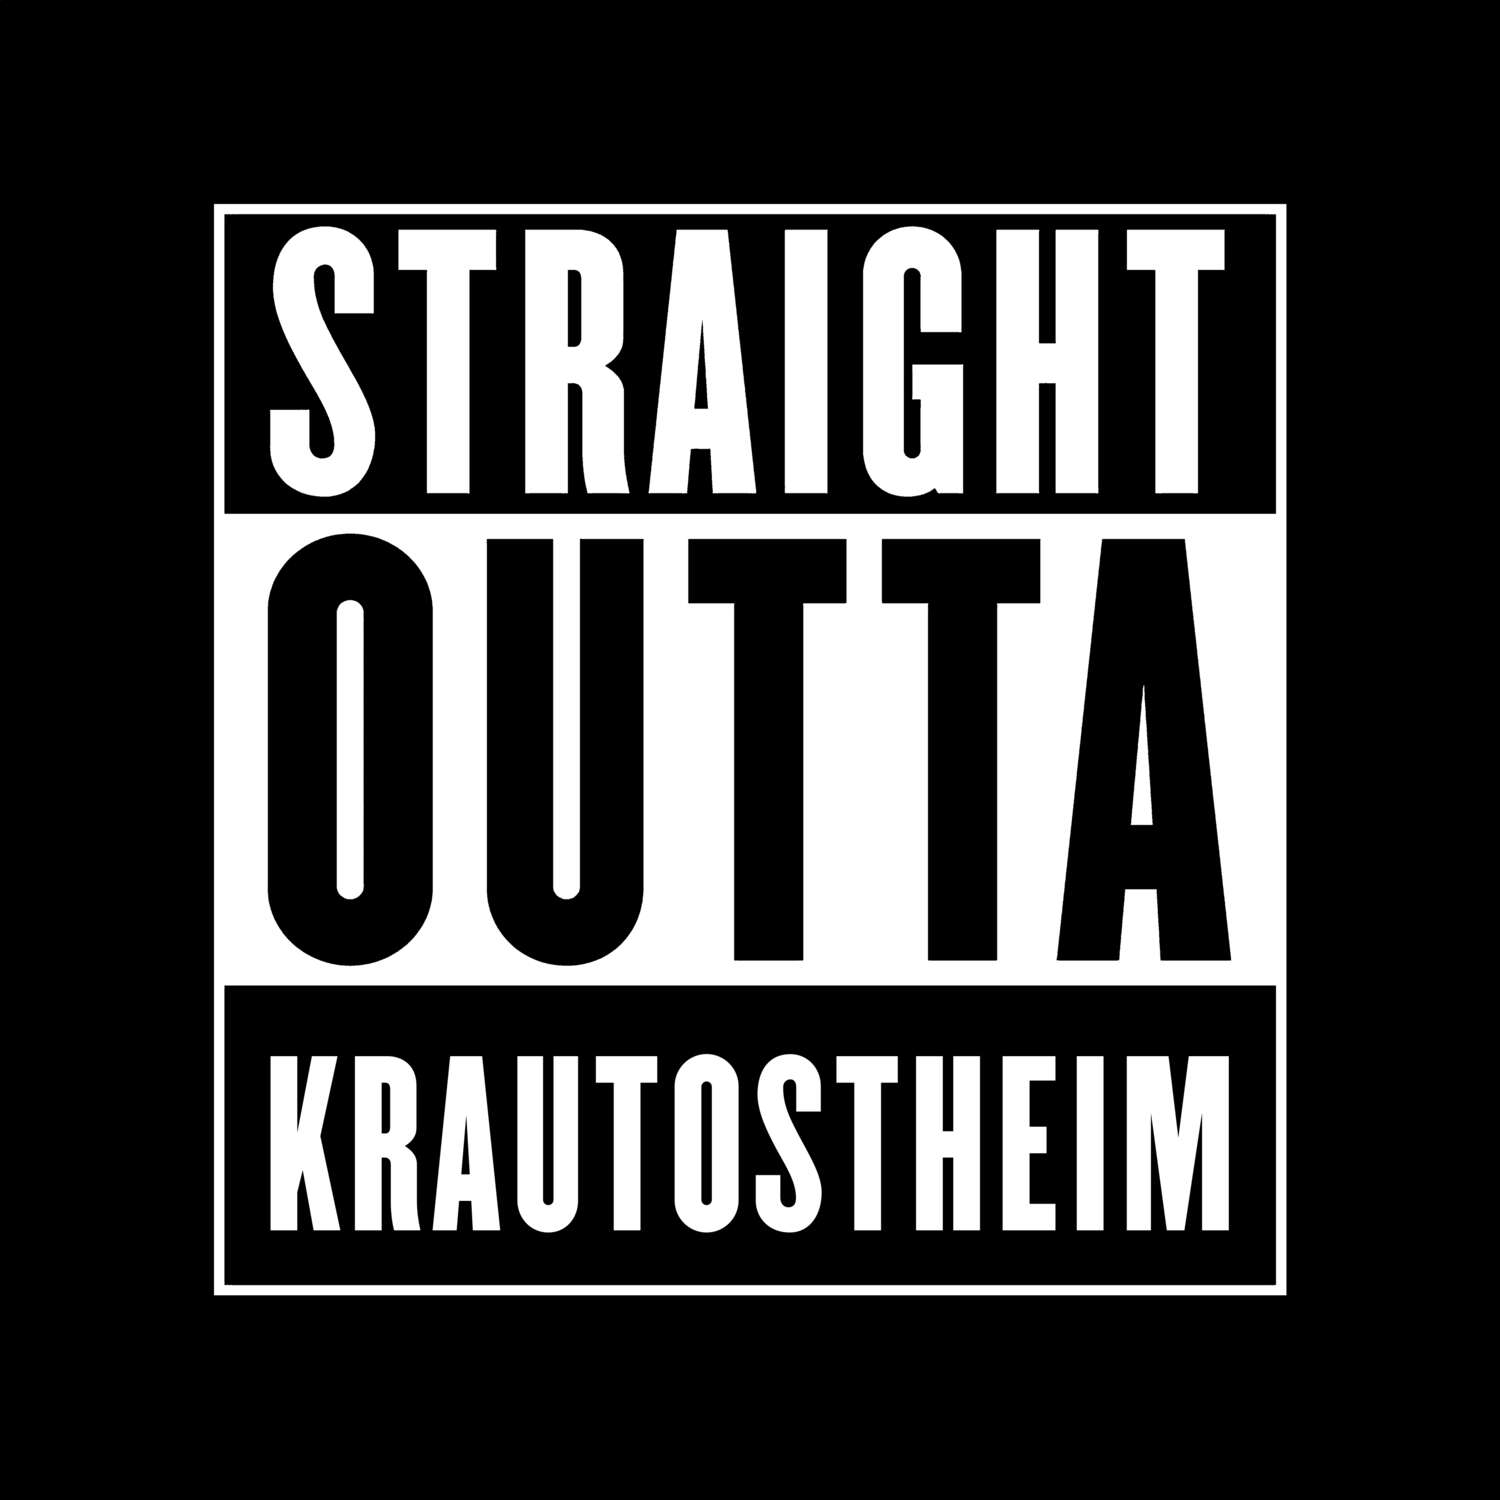 Krautostheim T-Shirt »Straight Outta«